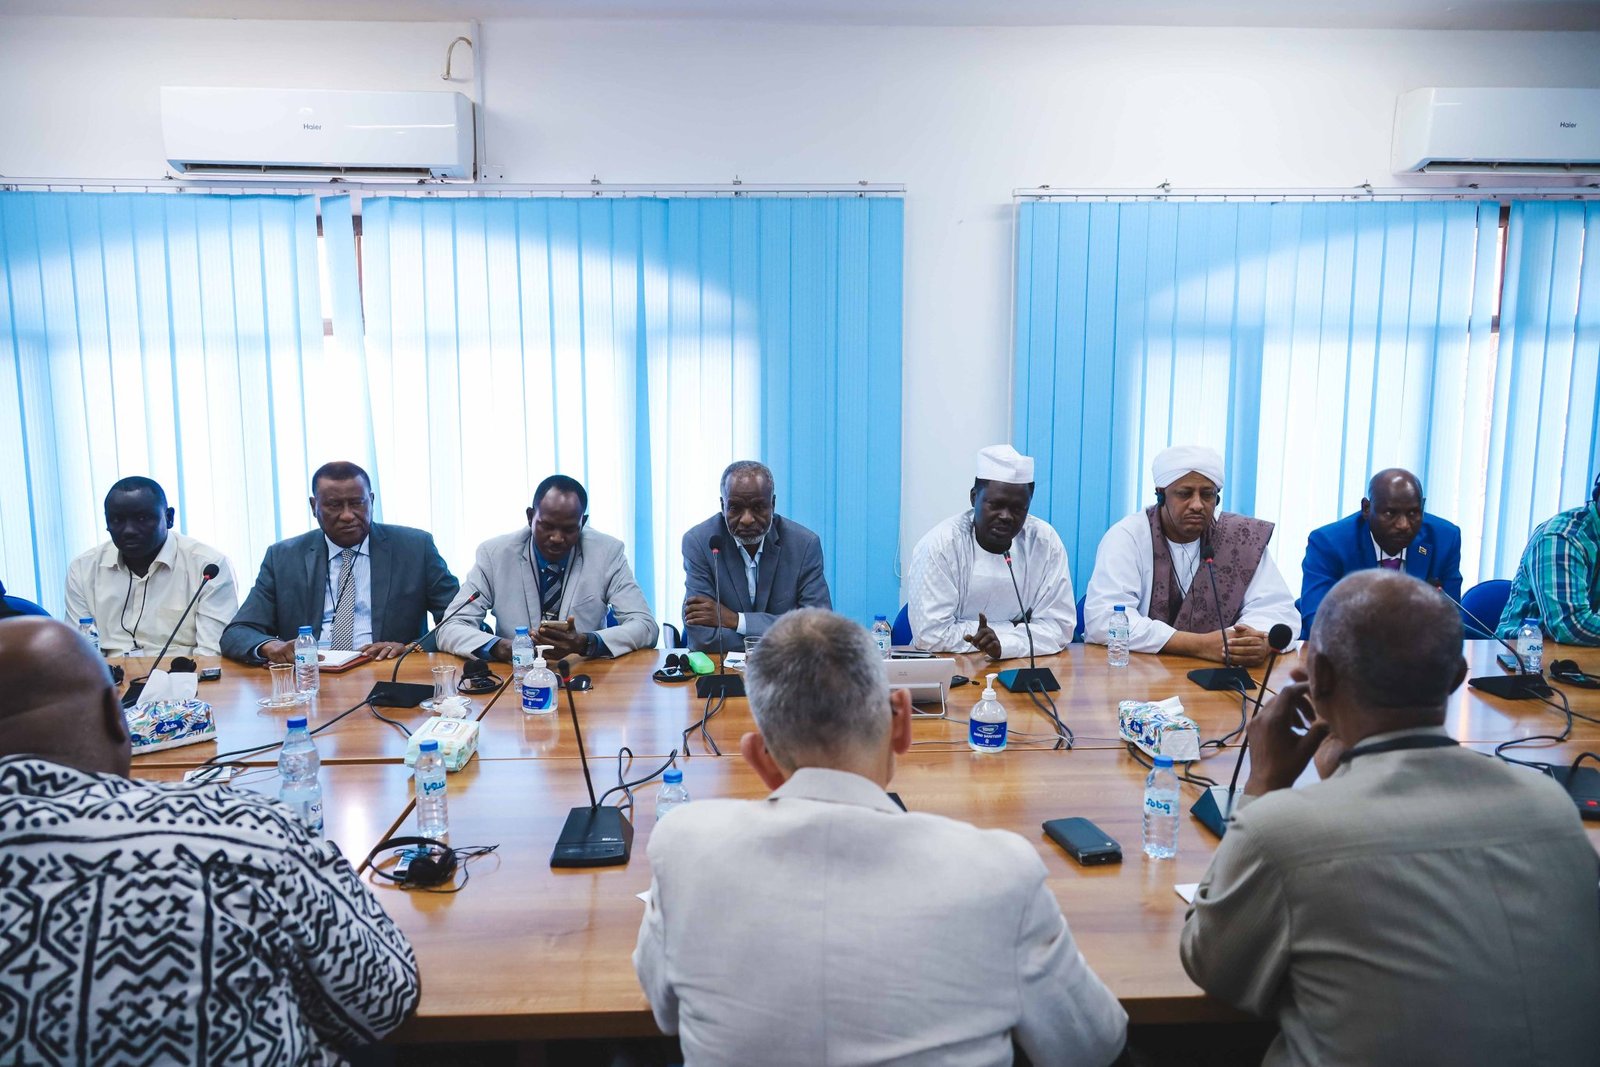 السودان : تفاصيل اعلان دستوري جديد يرفع حظر الترشح للانتخابات عن شاغلي المناصب بالفترة الانتقالية